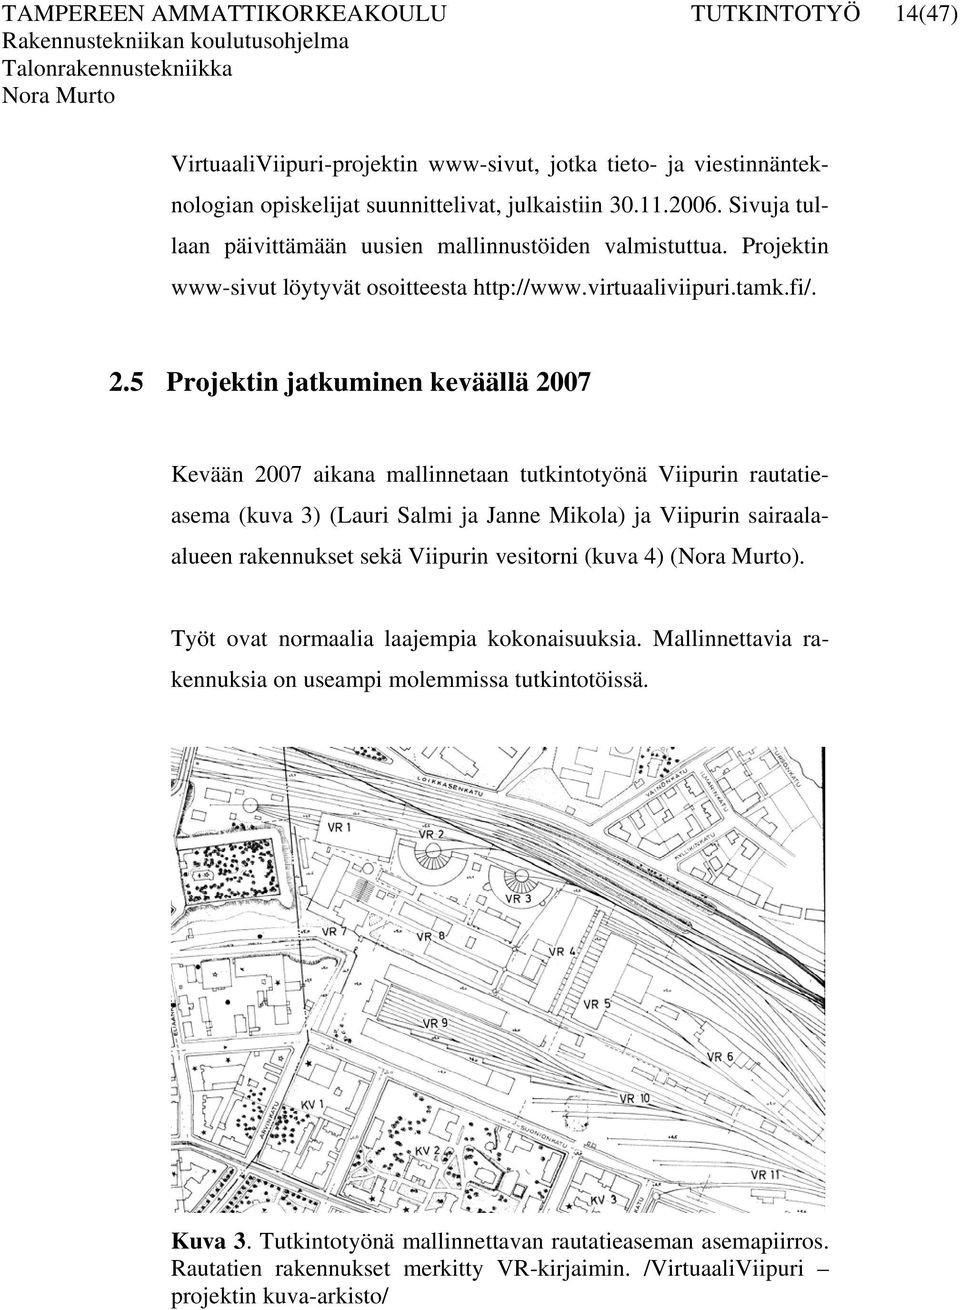 5 Projektin jatkuminen keväällä 2007 Kevään 2007 aikana mallinnetaan tutkintotyönä Viipurin rautatieasema (kuva 3) (Lauri Salmi ja Janne Mikola) ja Viipurin sairaalaalueen rakennukset sekä Viipurin